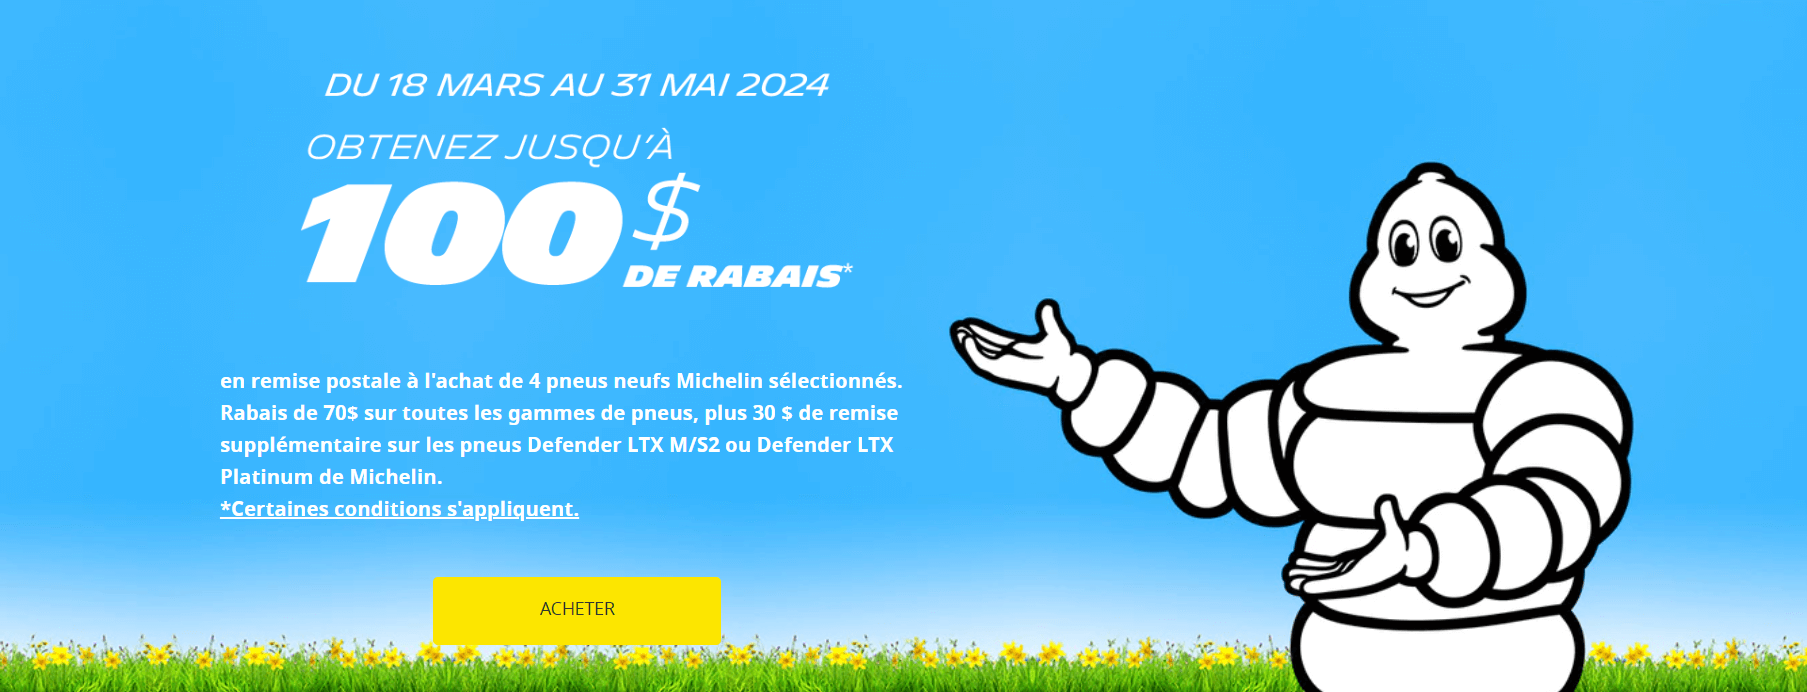 Remise postale PNEUS Michelin printemps 2024